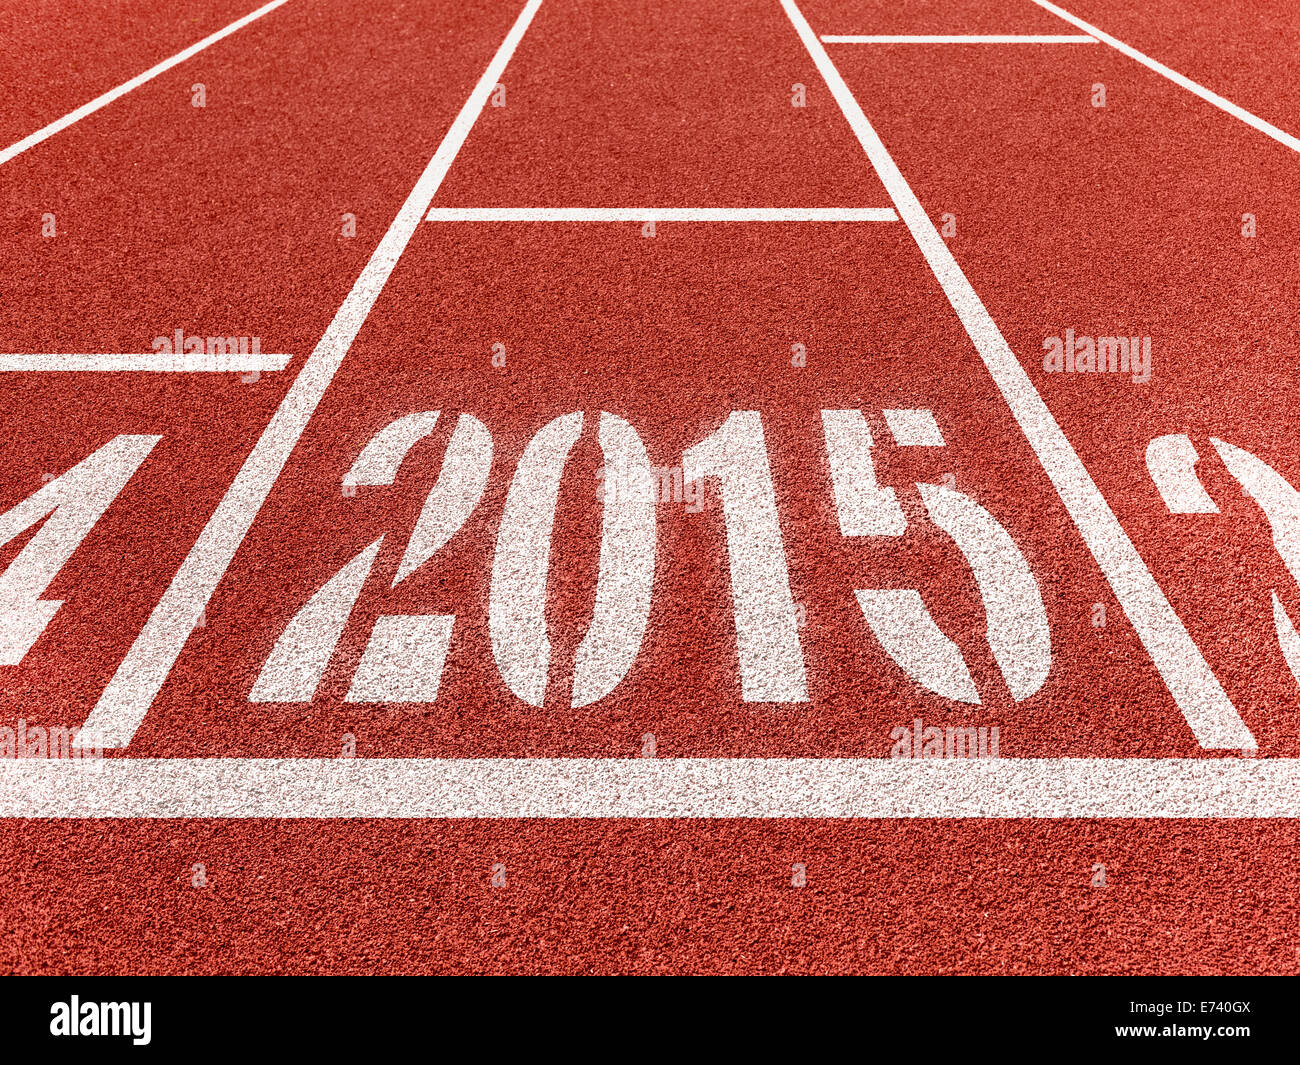 Año Nuevo 2015 en deporte diggits vía con la flecha. Buen comienzo, creciendo el concepto empresarial. Foto de stock